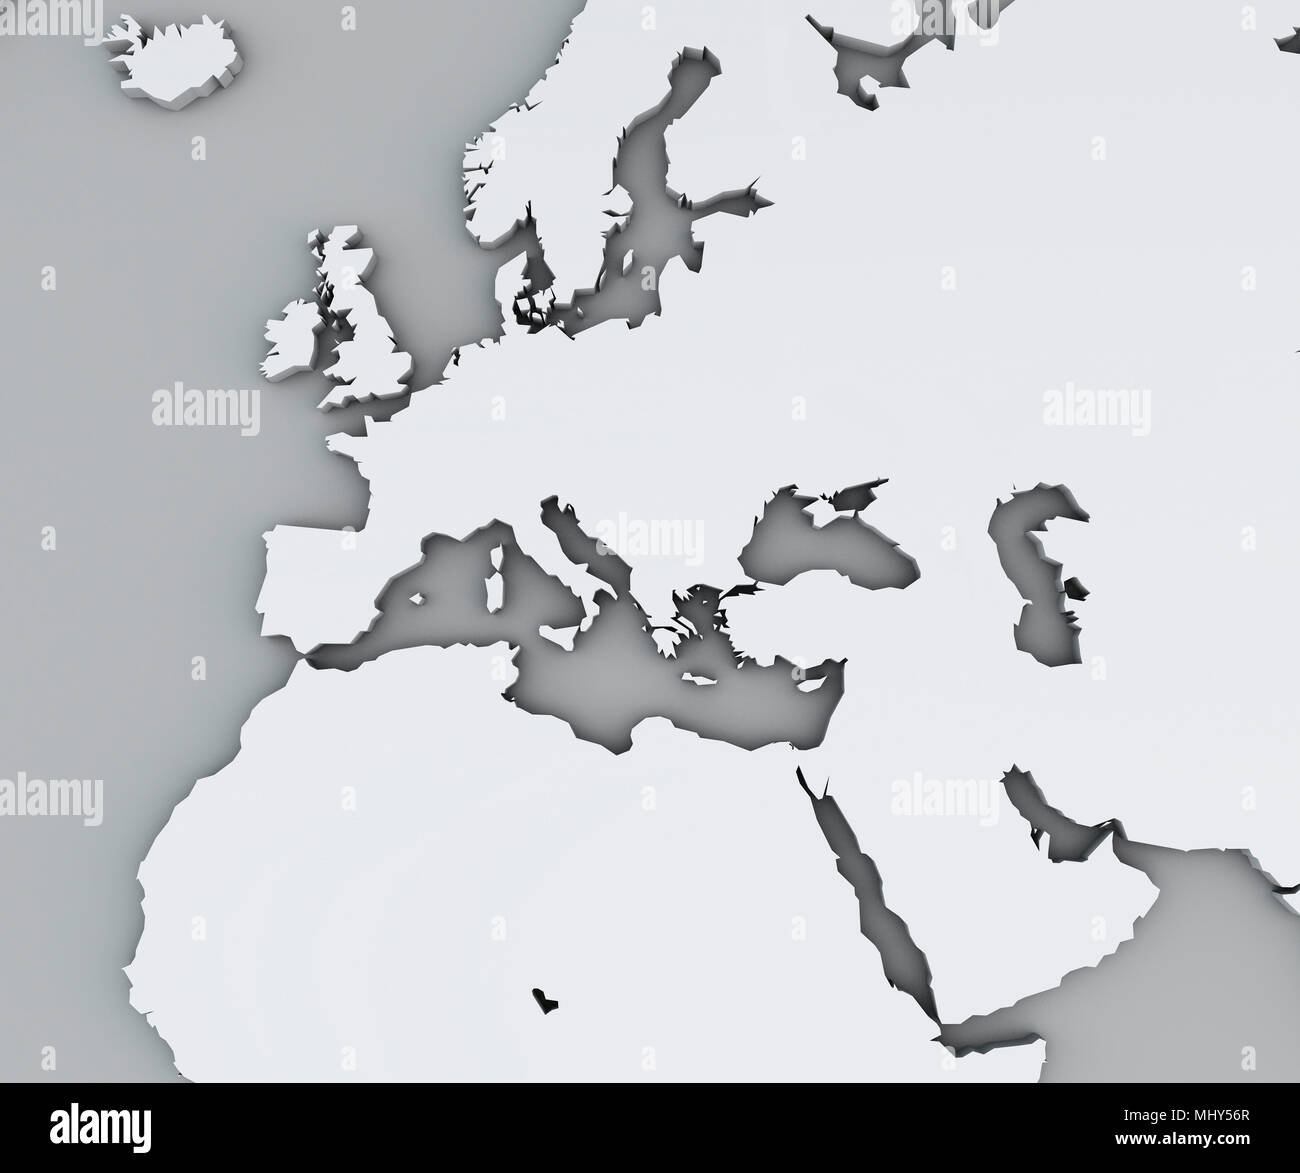 Karte von Mittelmeer und Europa, Afrika und dem Nahen Osten. Kartographie, geographische atlaswhite geografische Karte, Physik Stockfoto